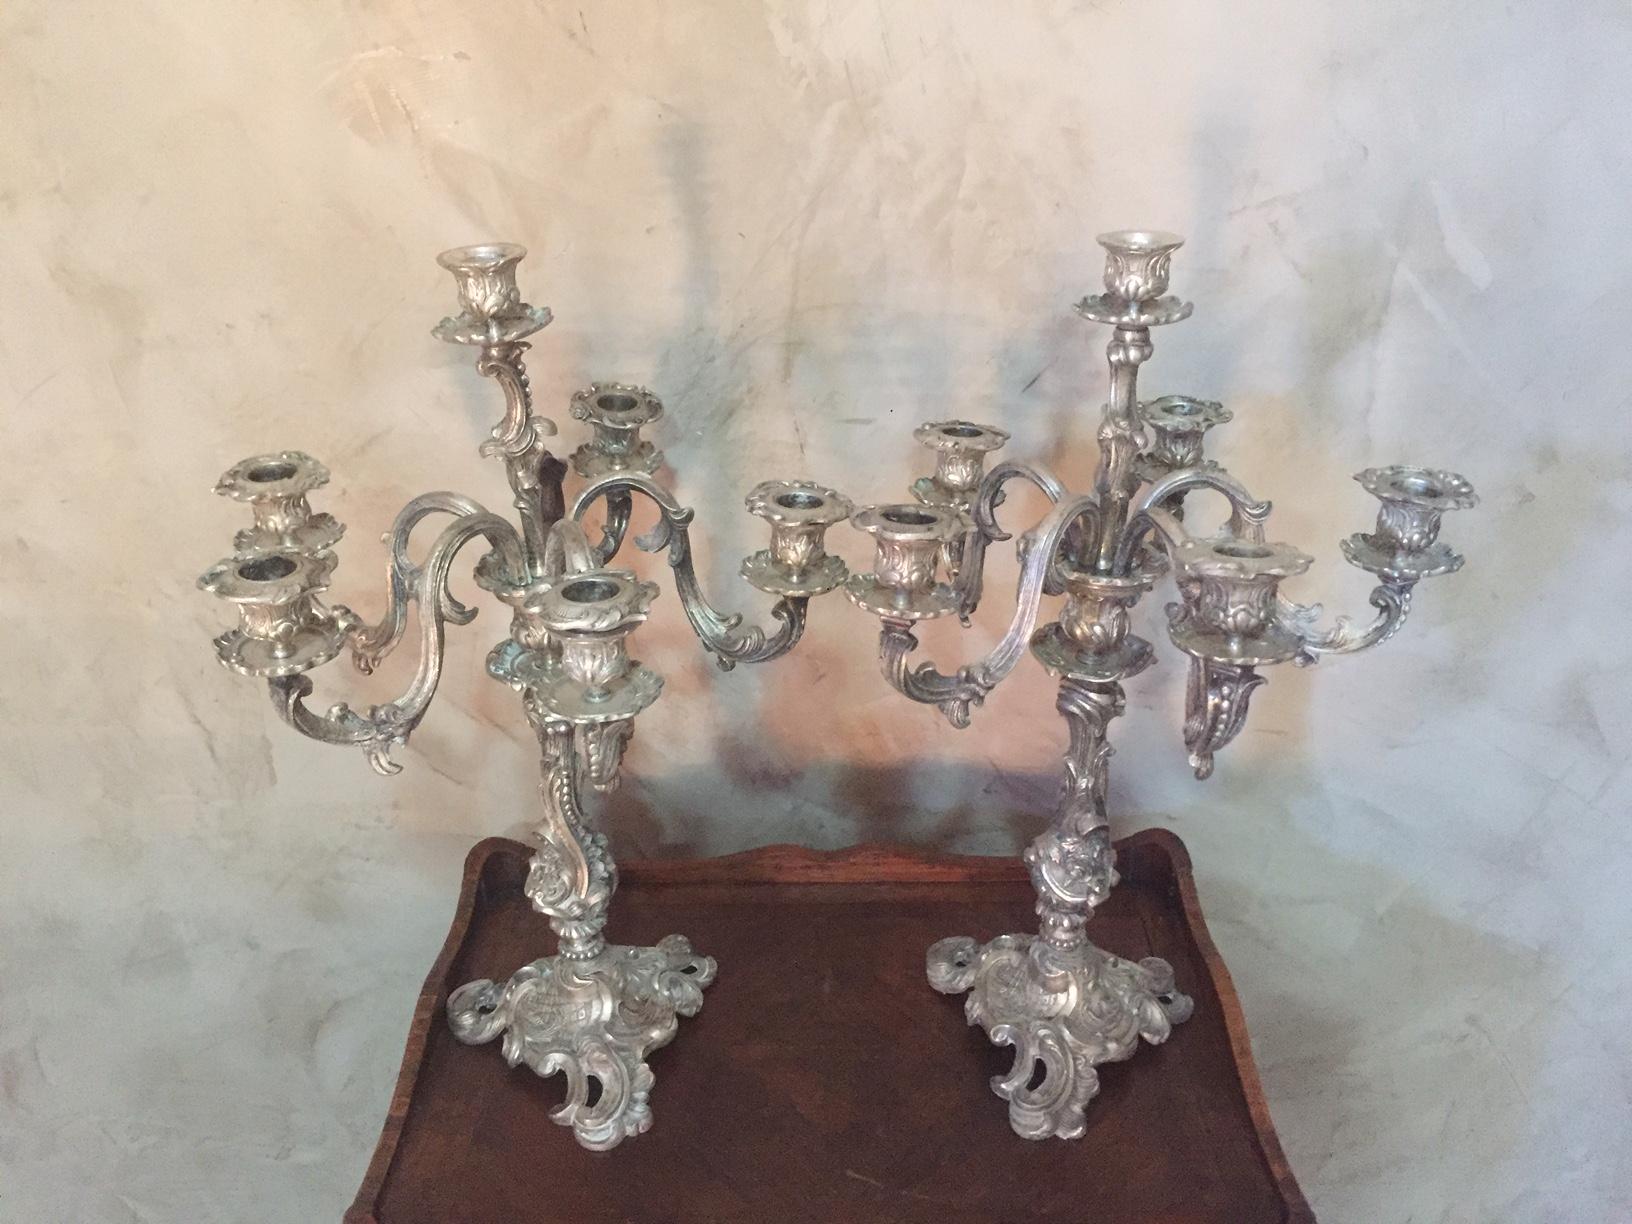 Sehr schönes Paar versilberter Bronze-Kerzenhalter aus dem frühen 20. Jahrhundert, Louis XV.
Sechs Lichter. Geformte Details von Blumen. Sehr gute Qualität.